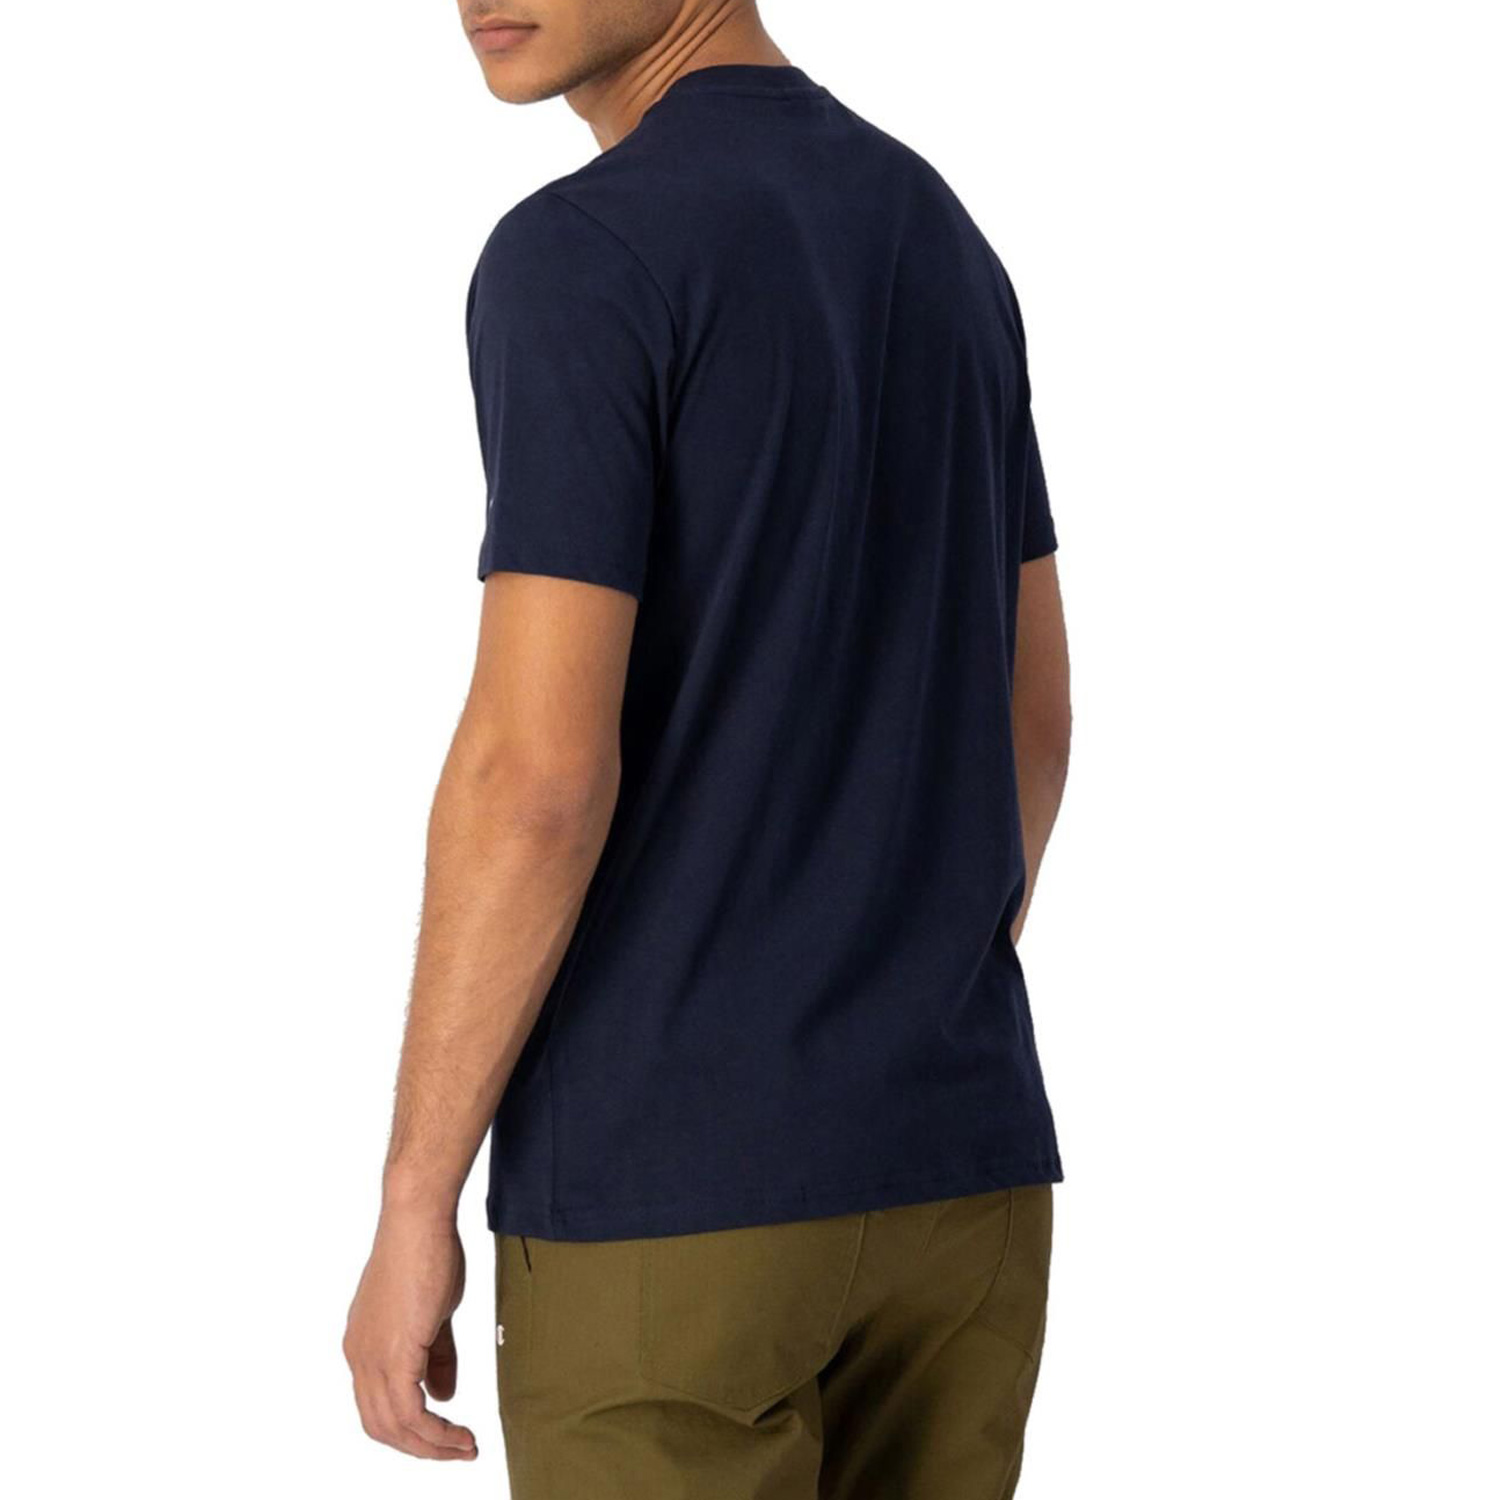 Champion T-Shirt im Comfort Fit mit Logo-Schriftzug dunkelblau